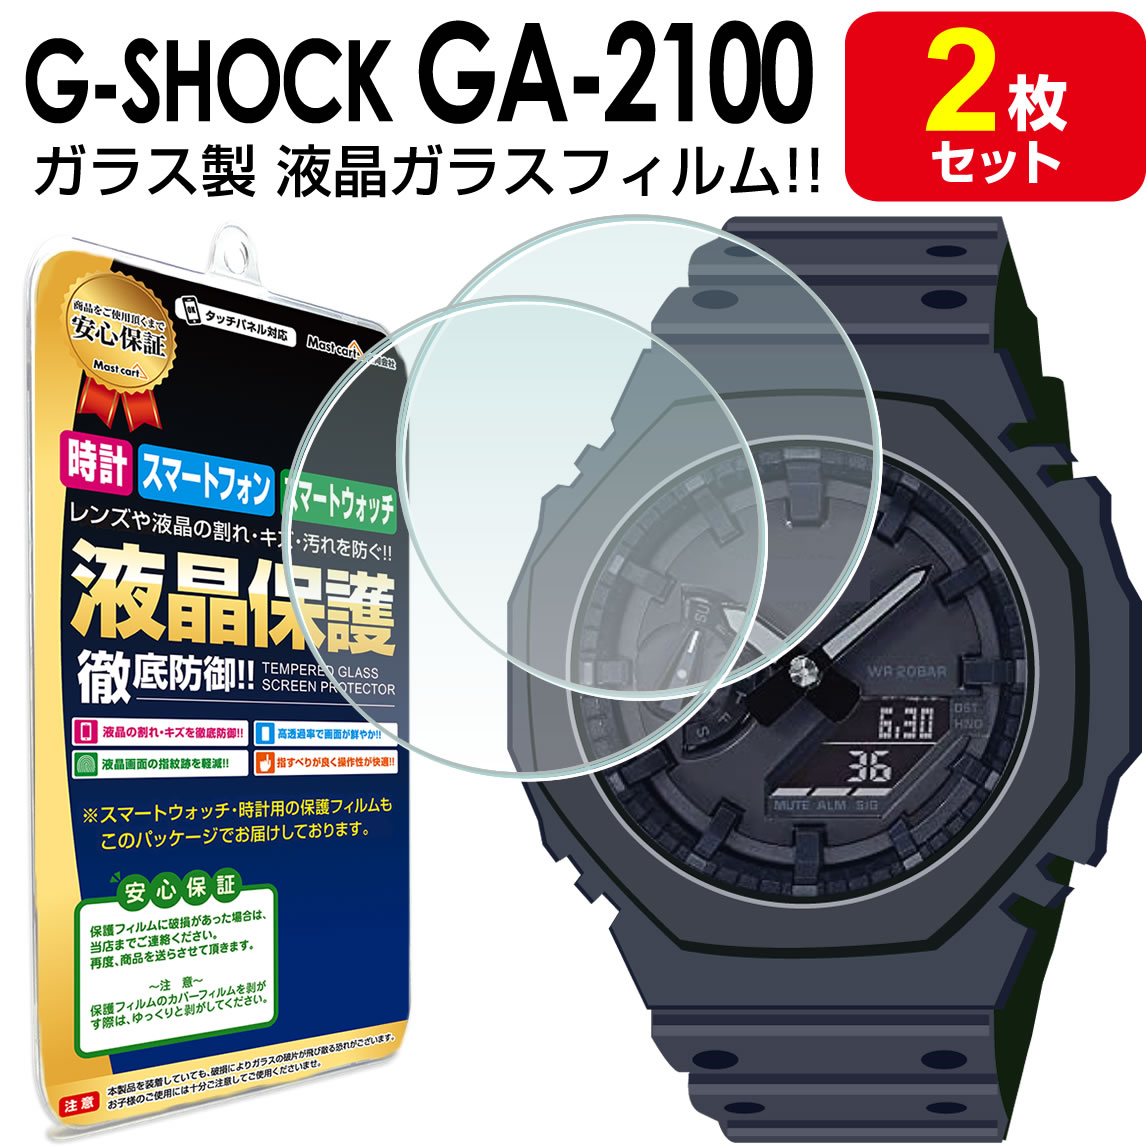 【強化ガラス 2枚セット】 G-SHOCK GA-2